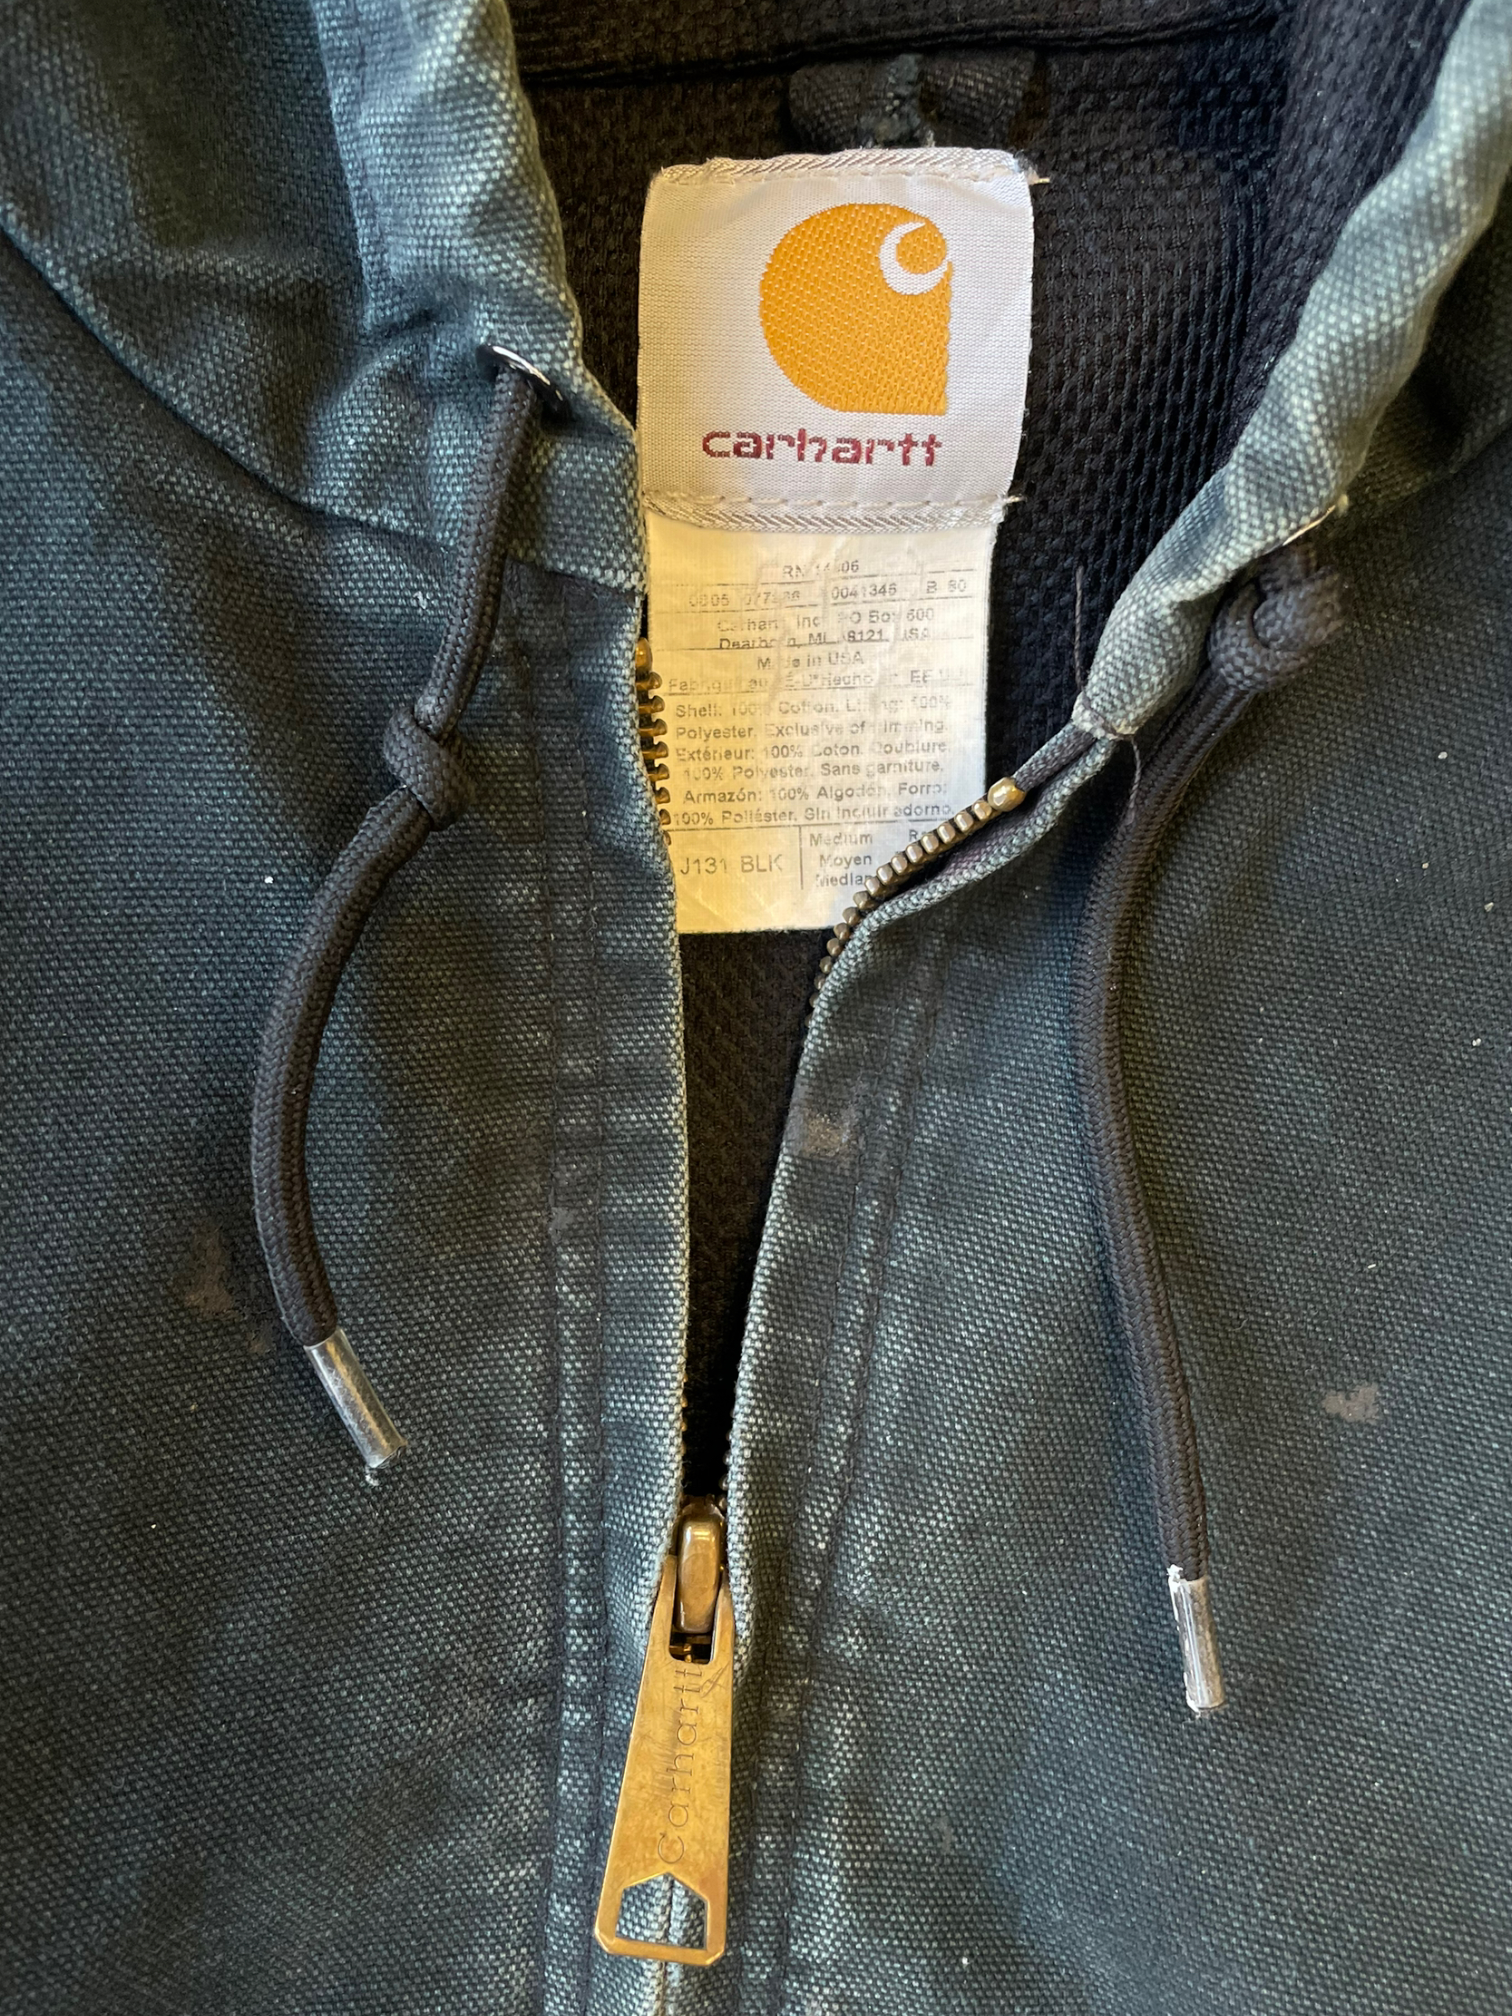 Vintage Distressed Carhartt Hooded Jacket - Medium/Large